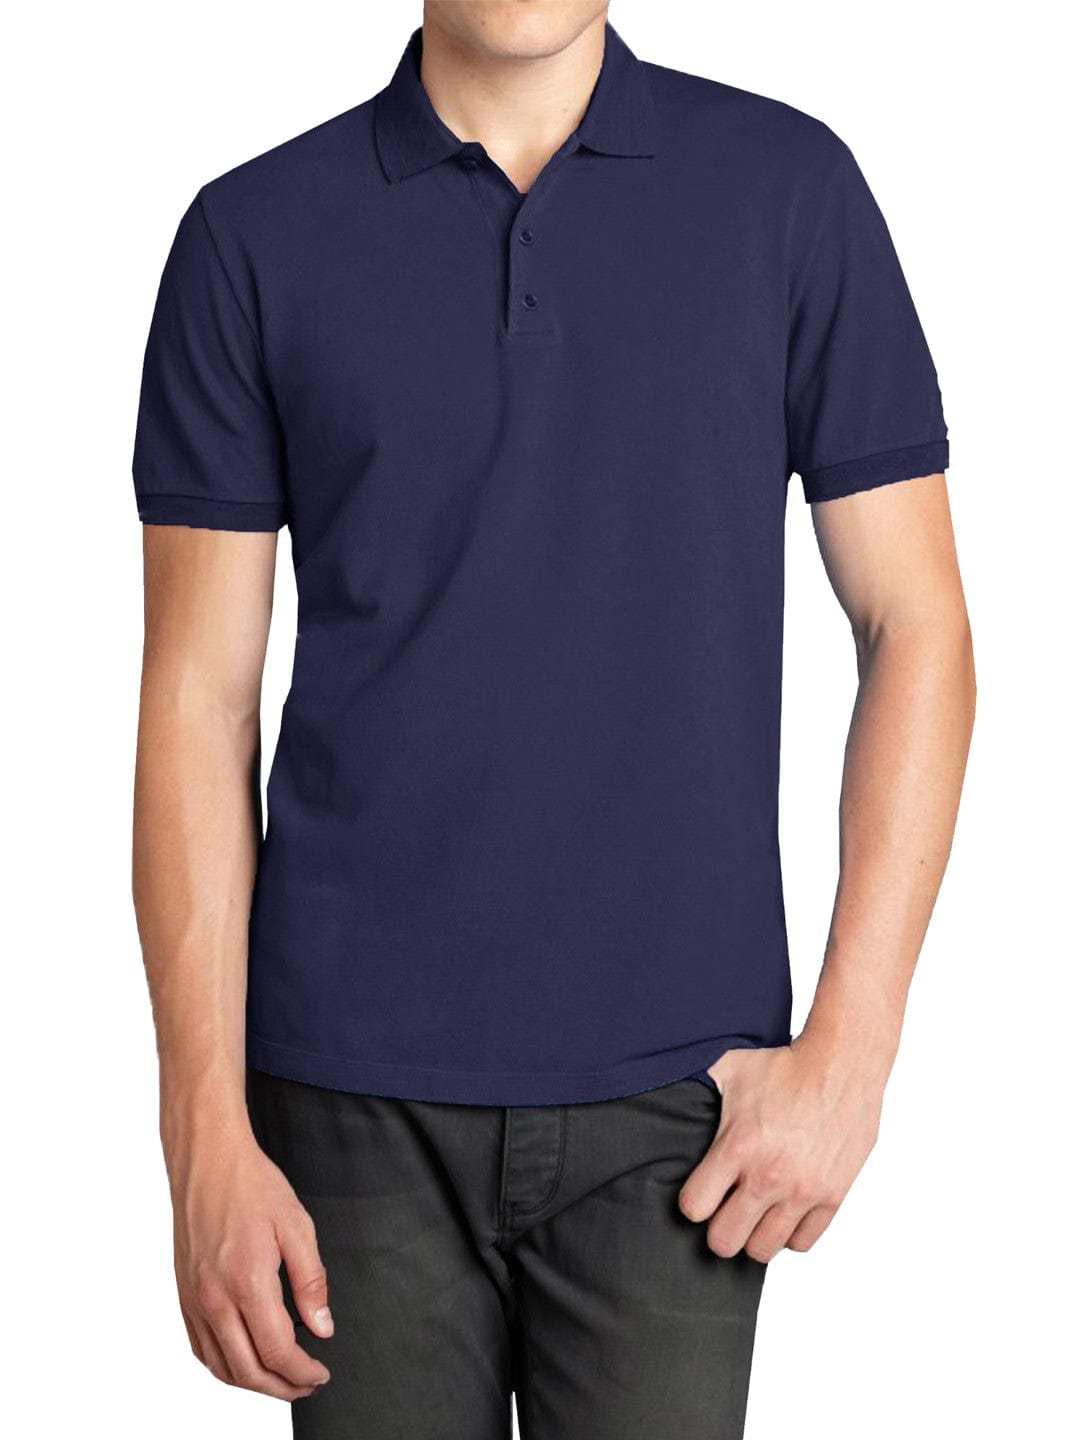 Men's Navy Blue Open Neck Collar Short Sleeve Pique Polo Shirt